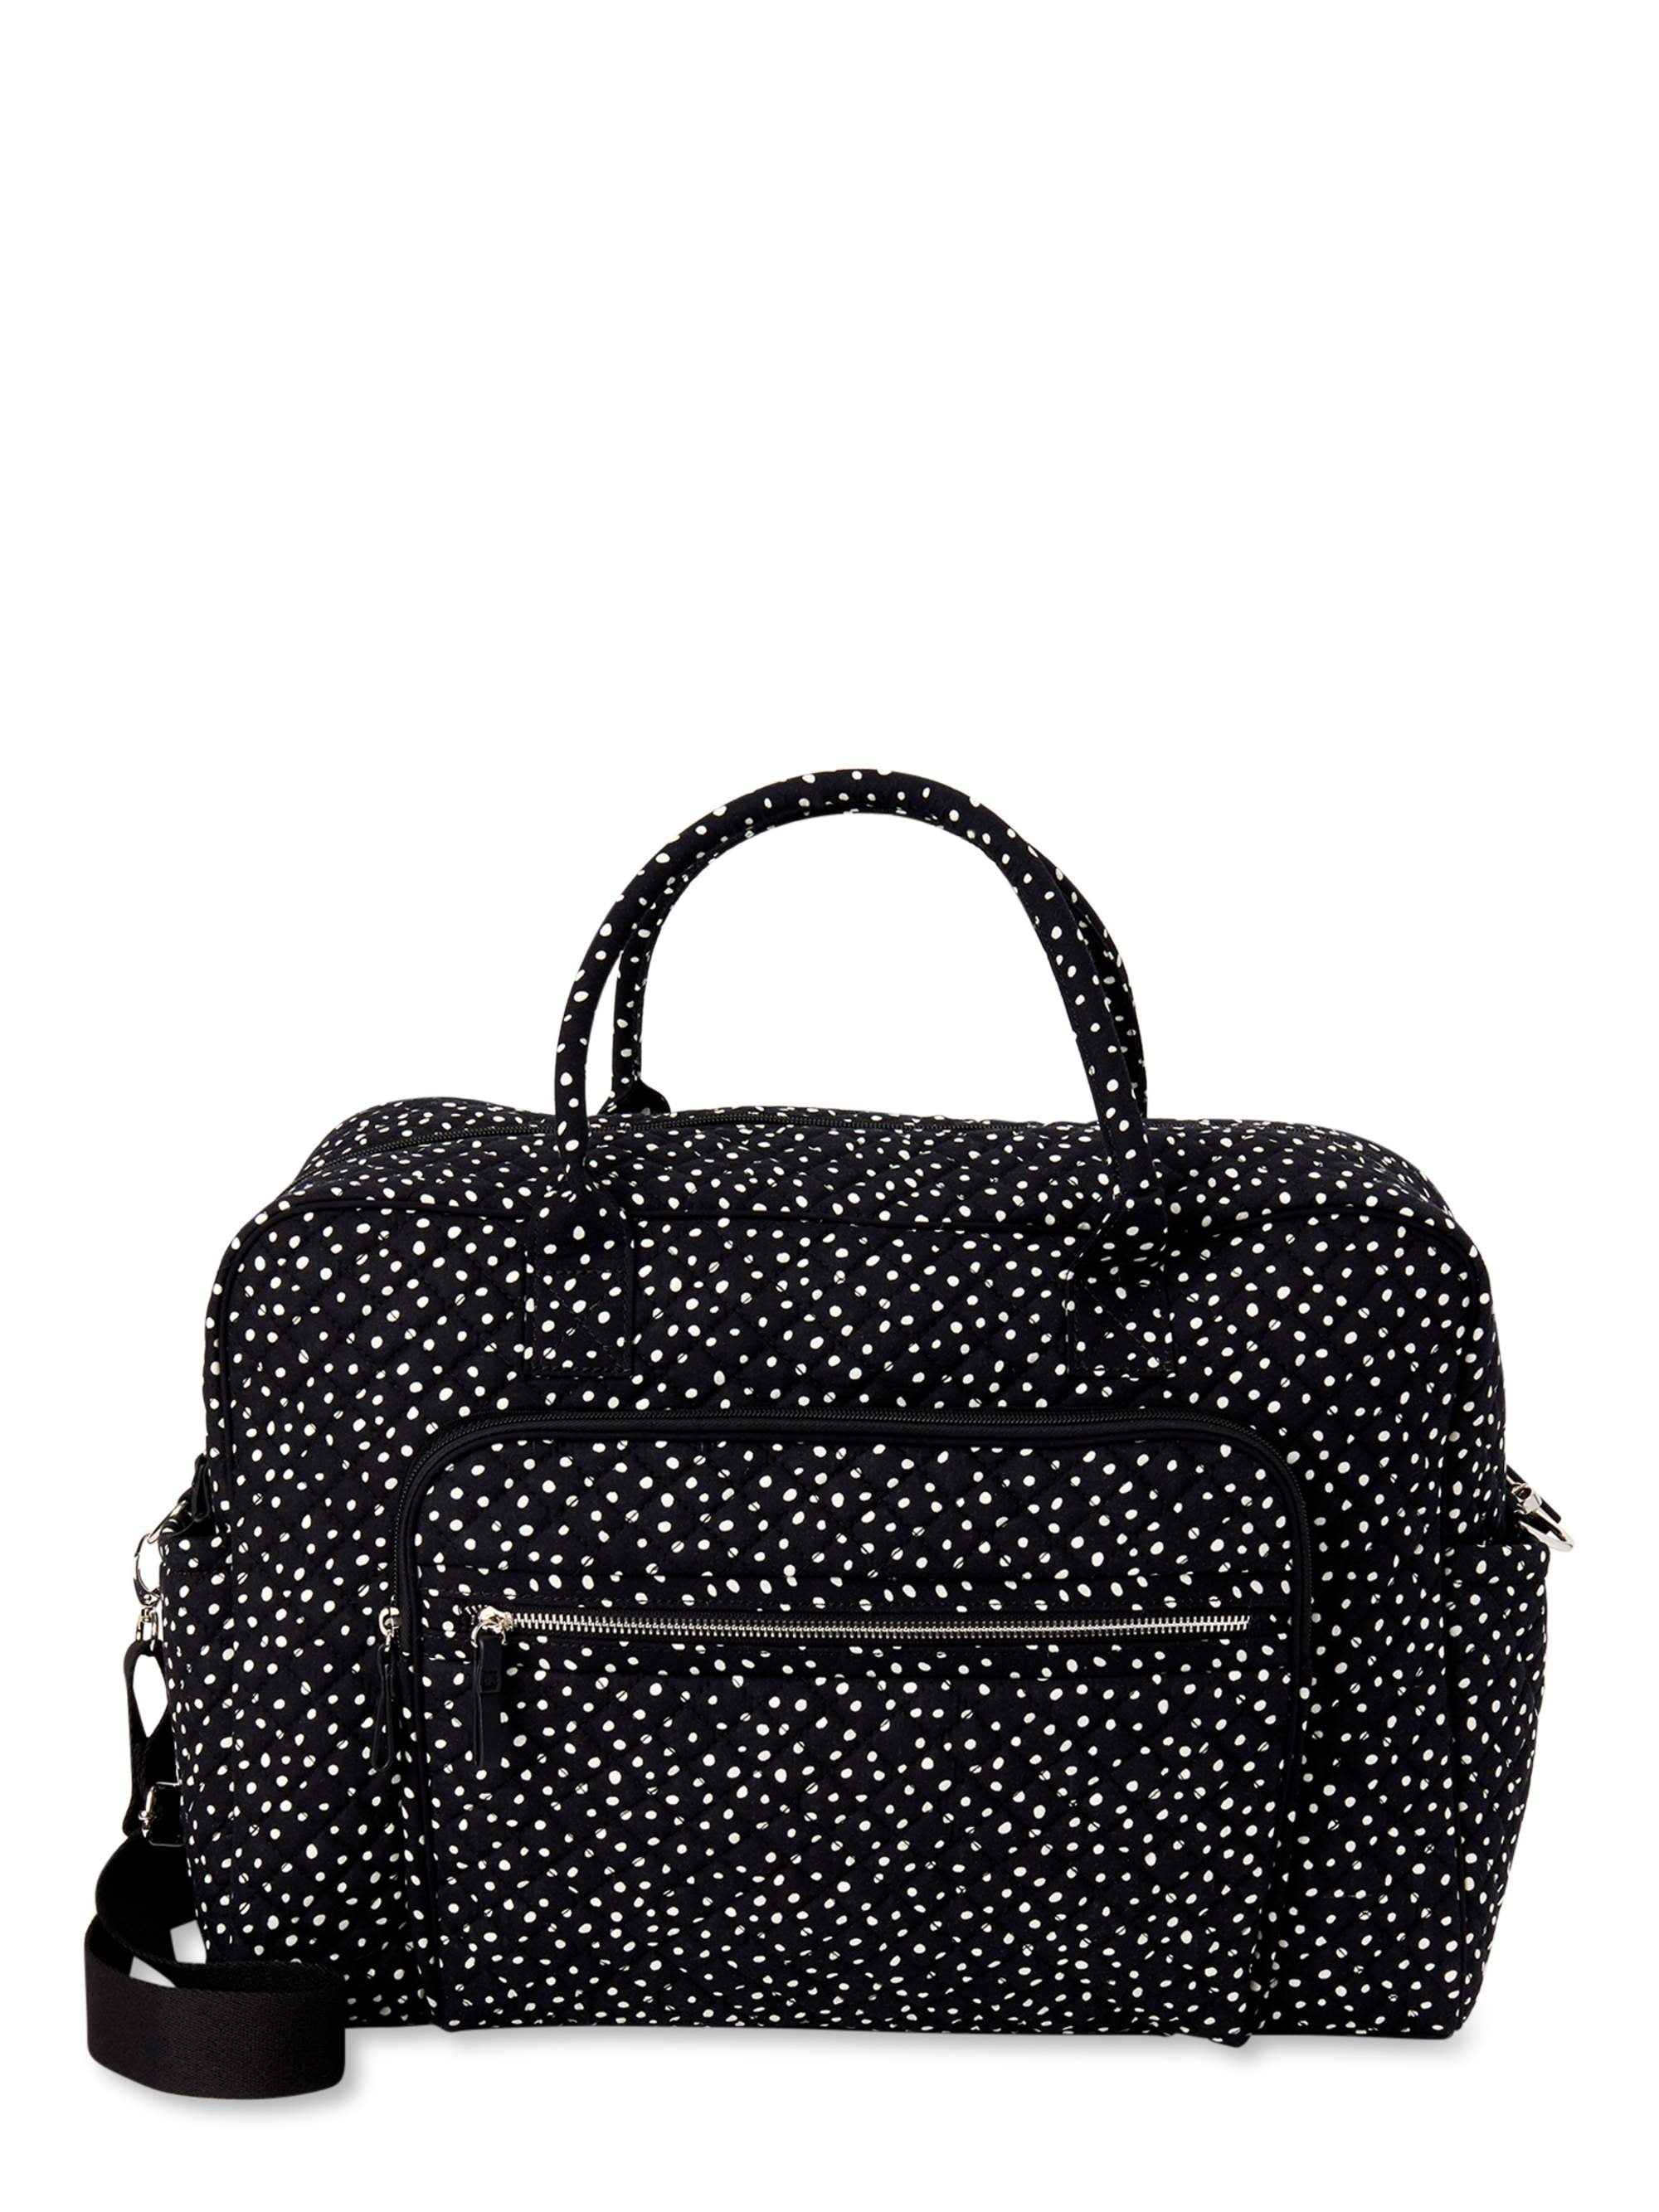 Black Large Quilted Weekender Bag